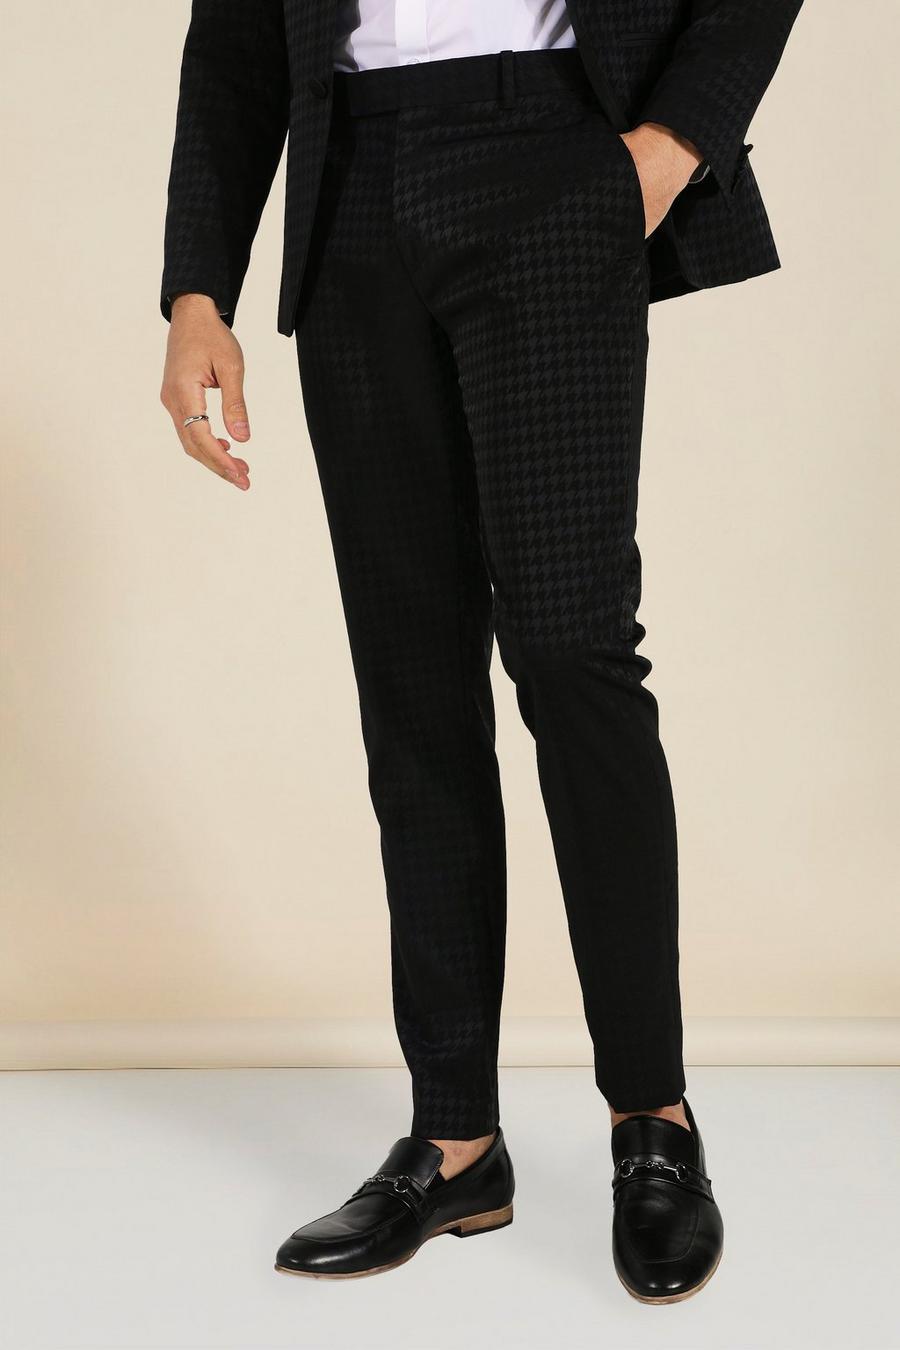 שחור nero מכנסי סקיני עם הדפס משבצות משוננות בשני צבעים 